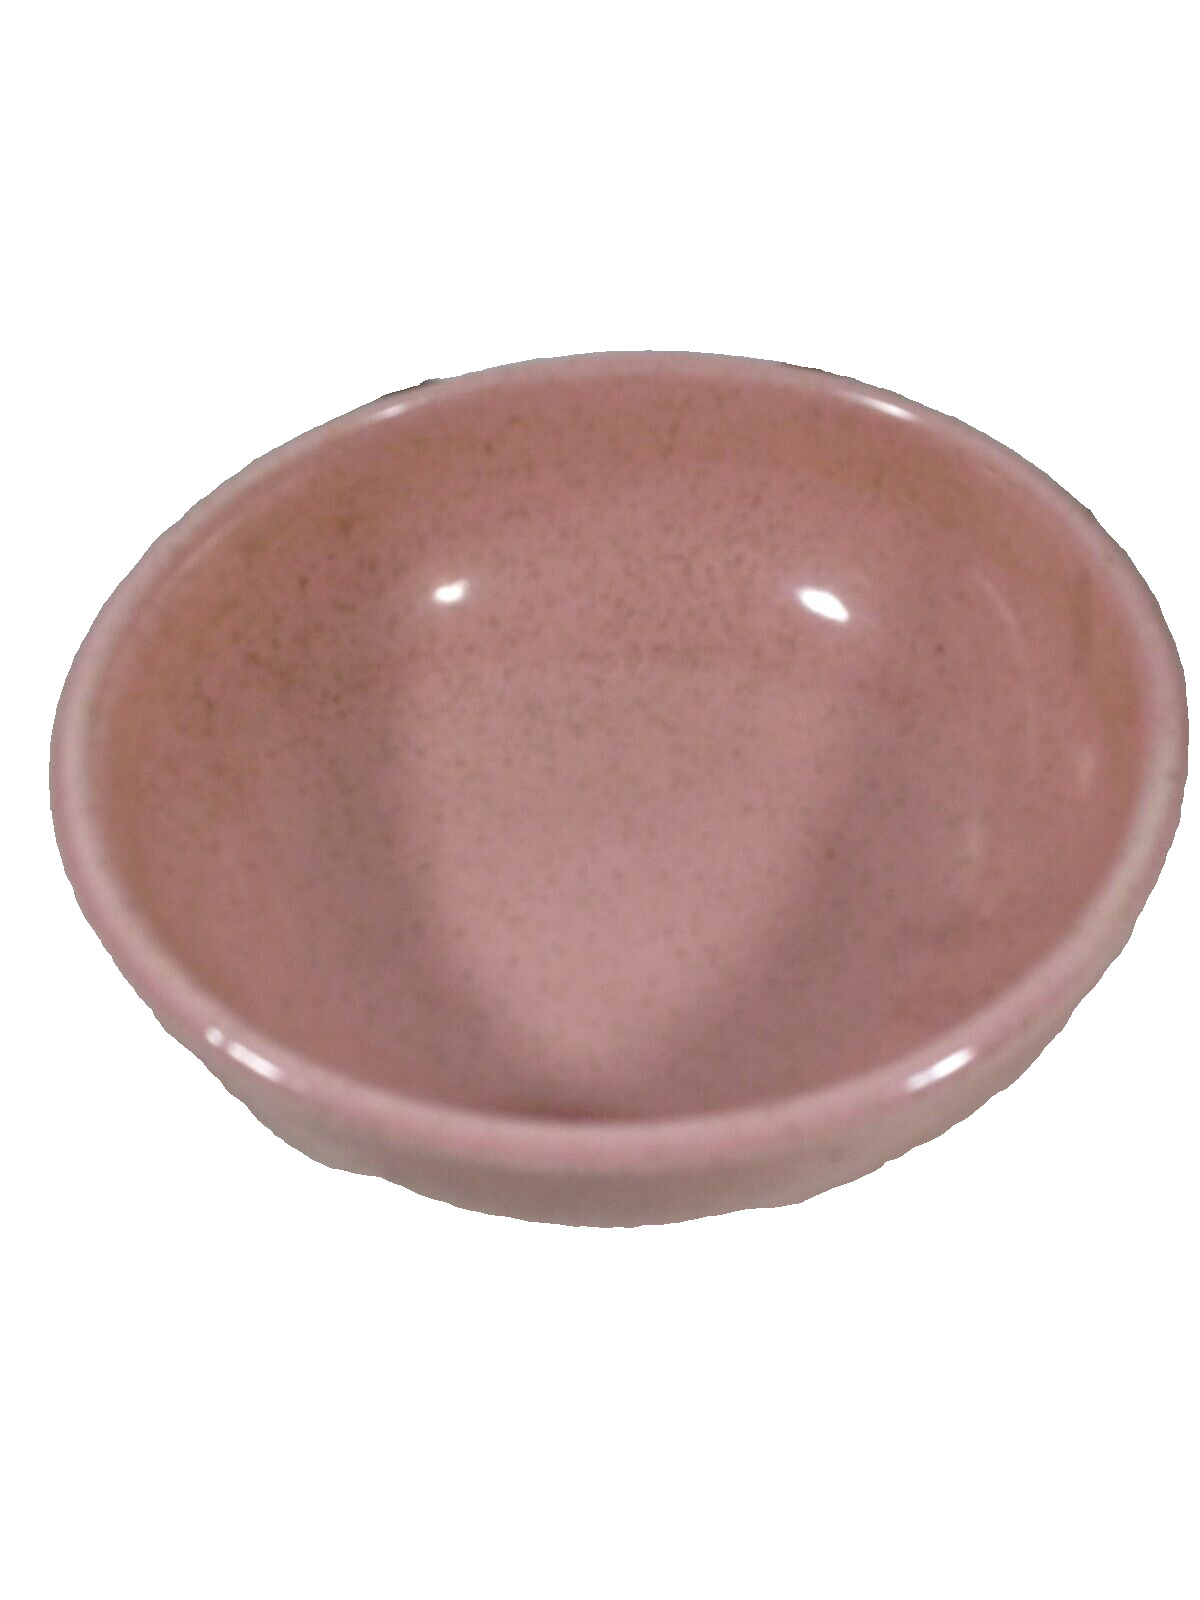 Vintage McCoy Pottery Speckled Pink Soup Cereal Bowl 5-1/2”